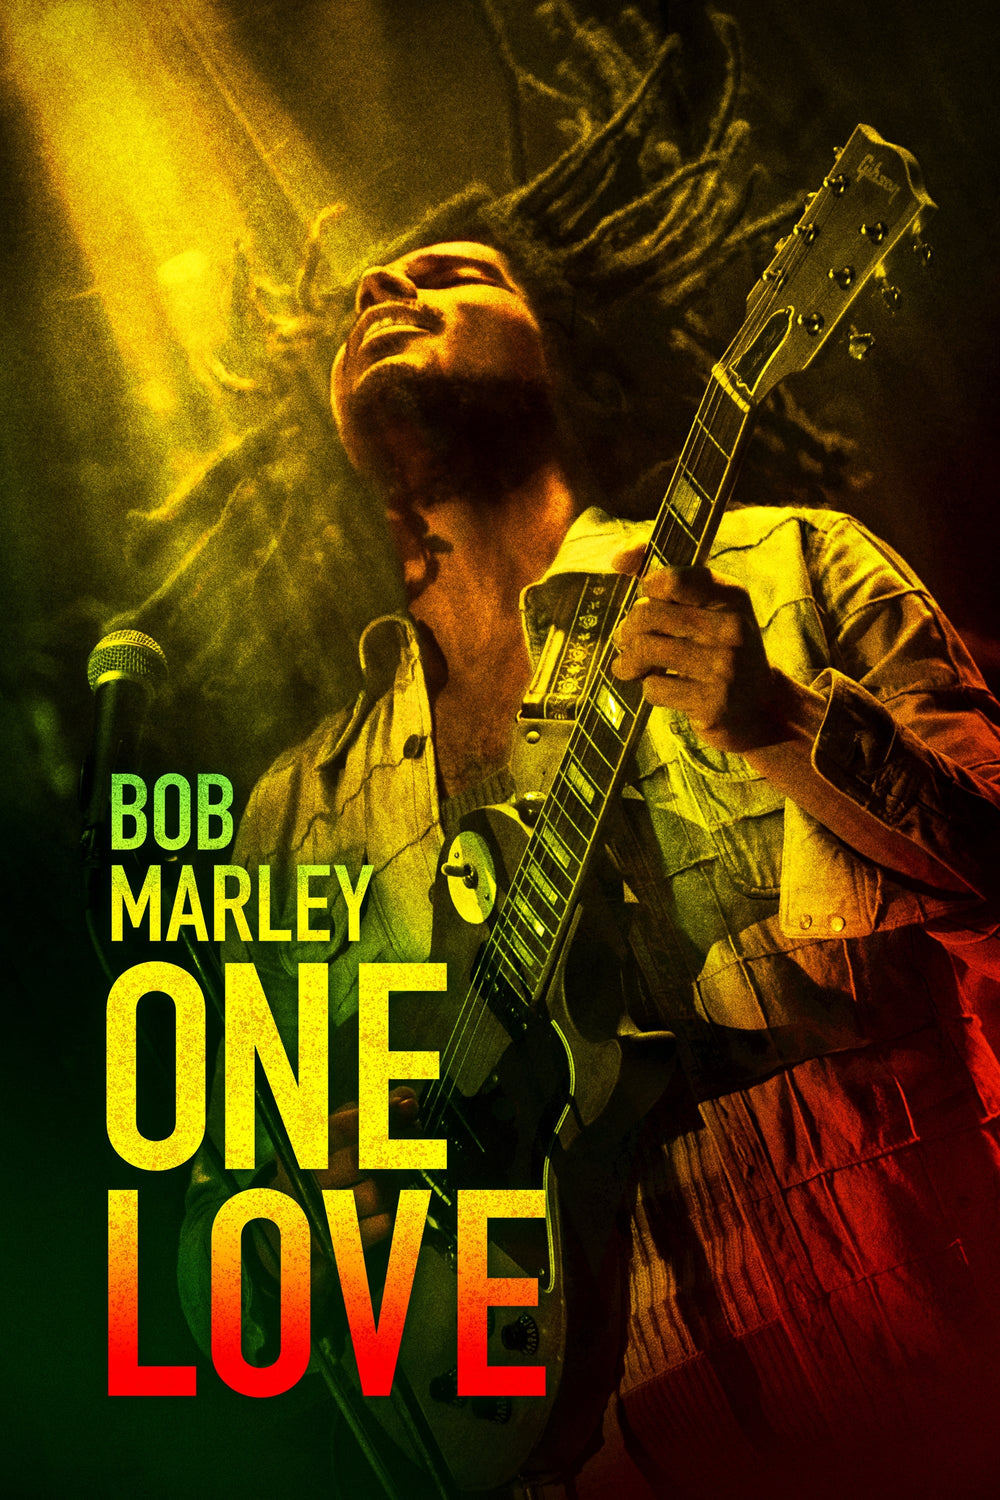 BOB MARLEY ONE LOVE HD Vudu or iTunes 4k